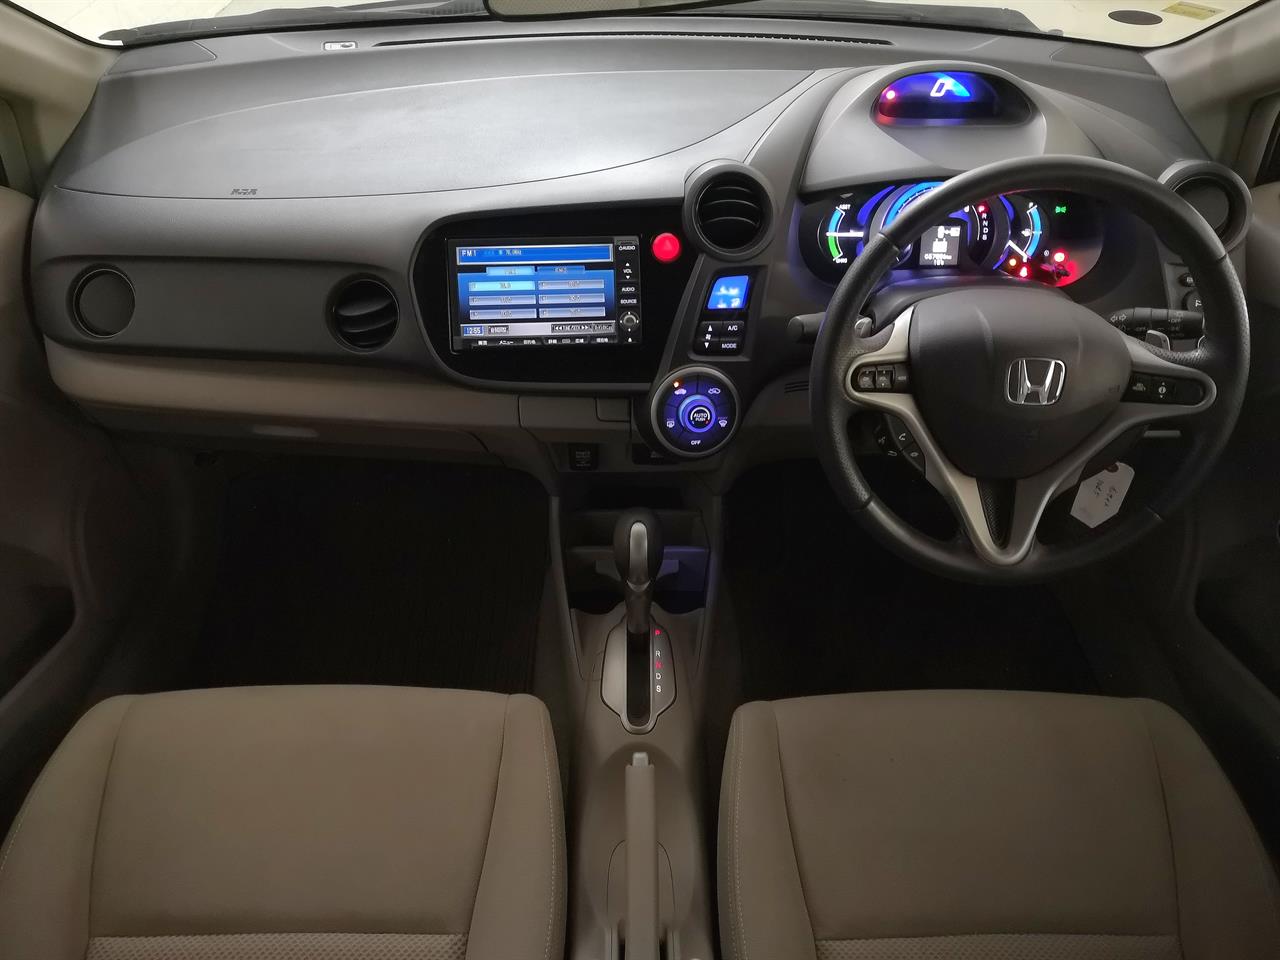 2009 Honda Insight